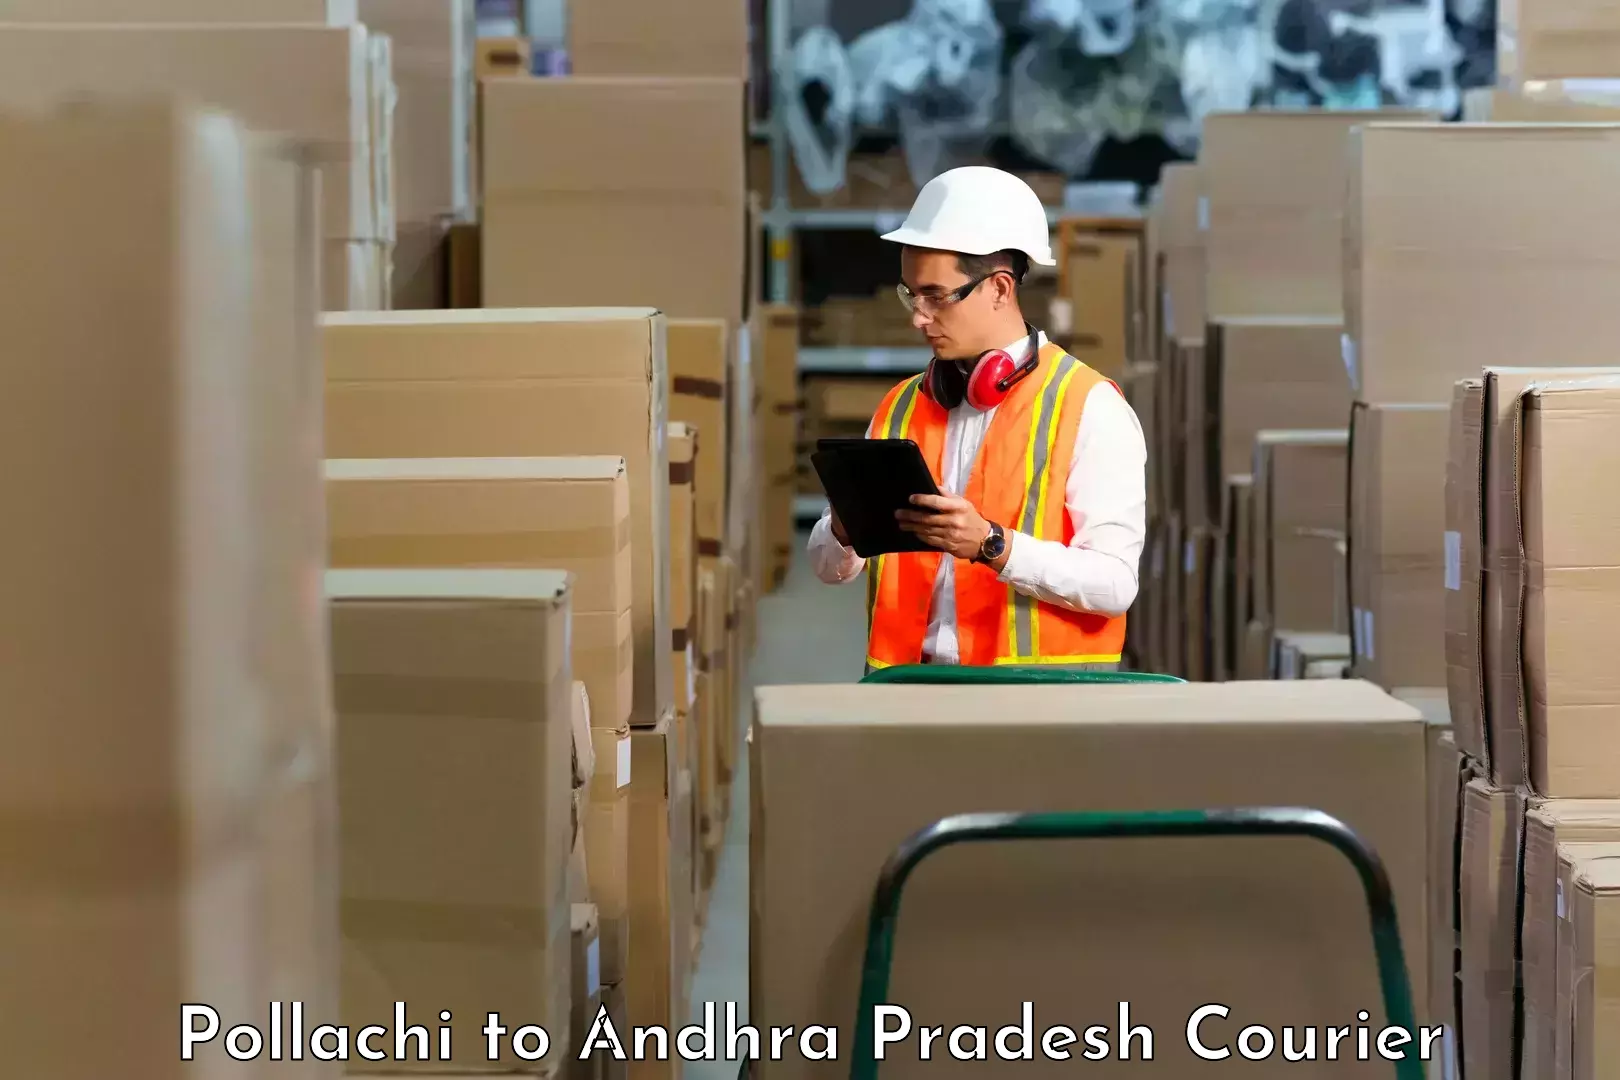 Courier service booking Pollachi to Venkatagiri